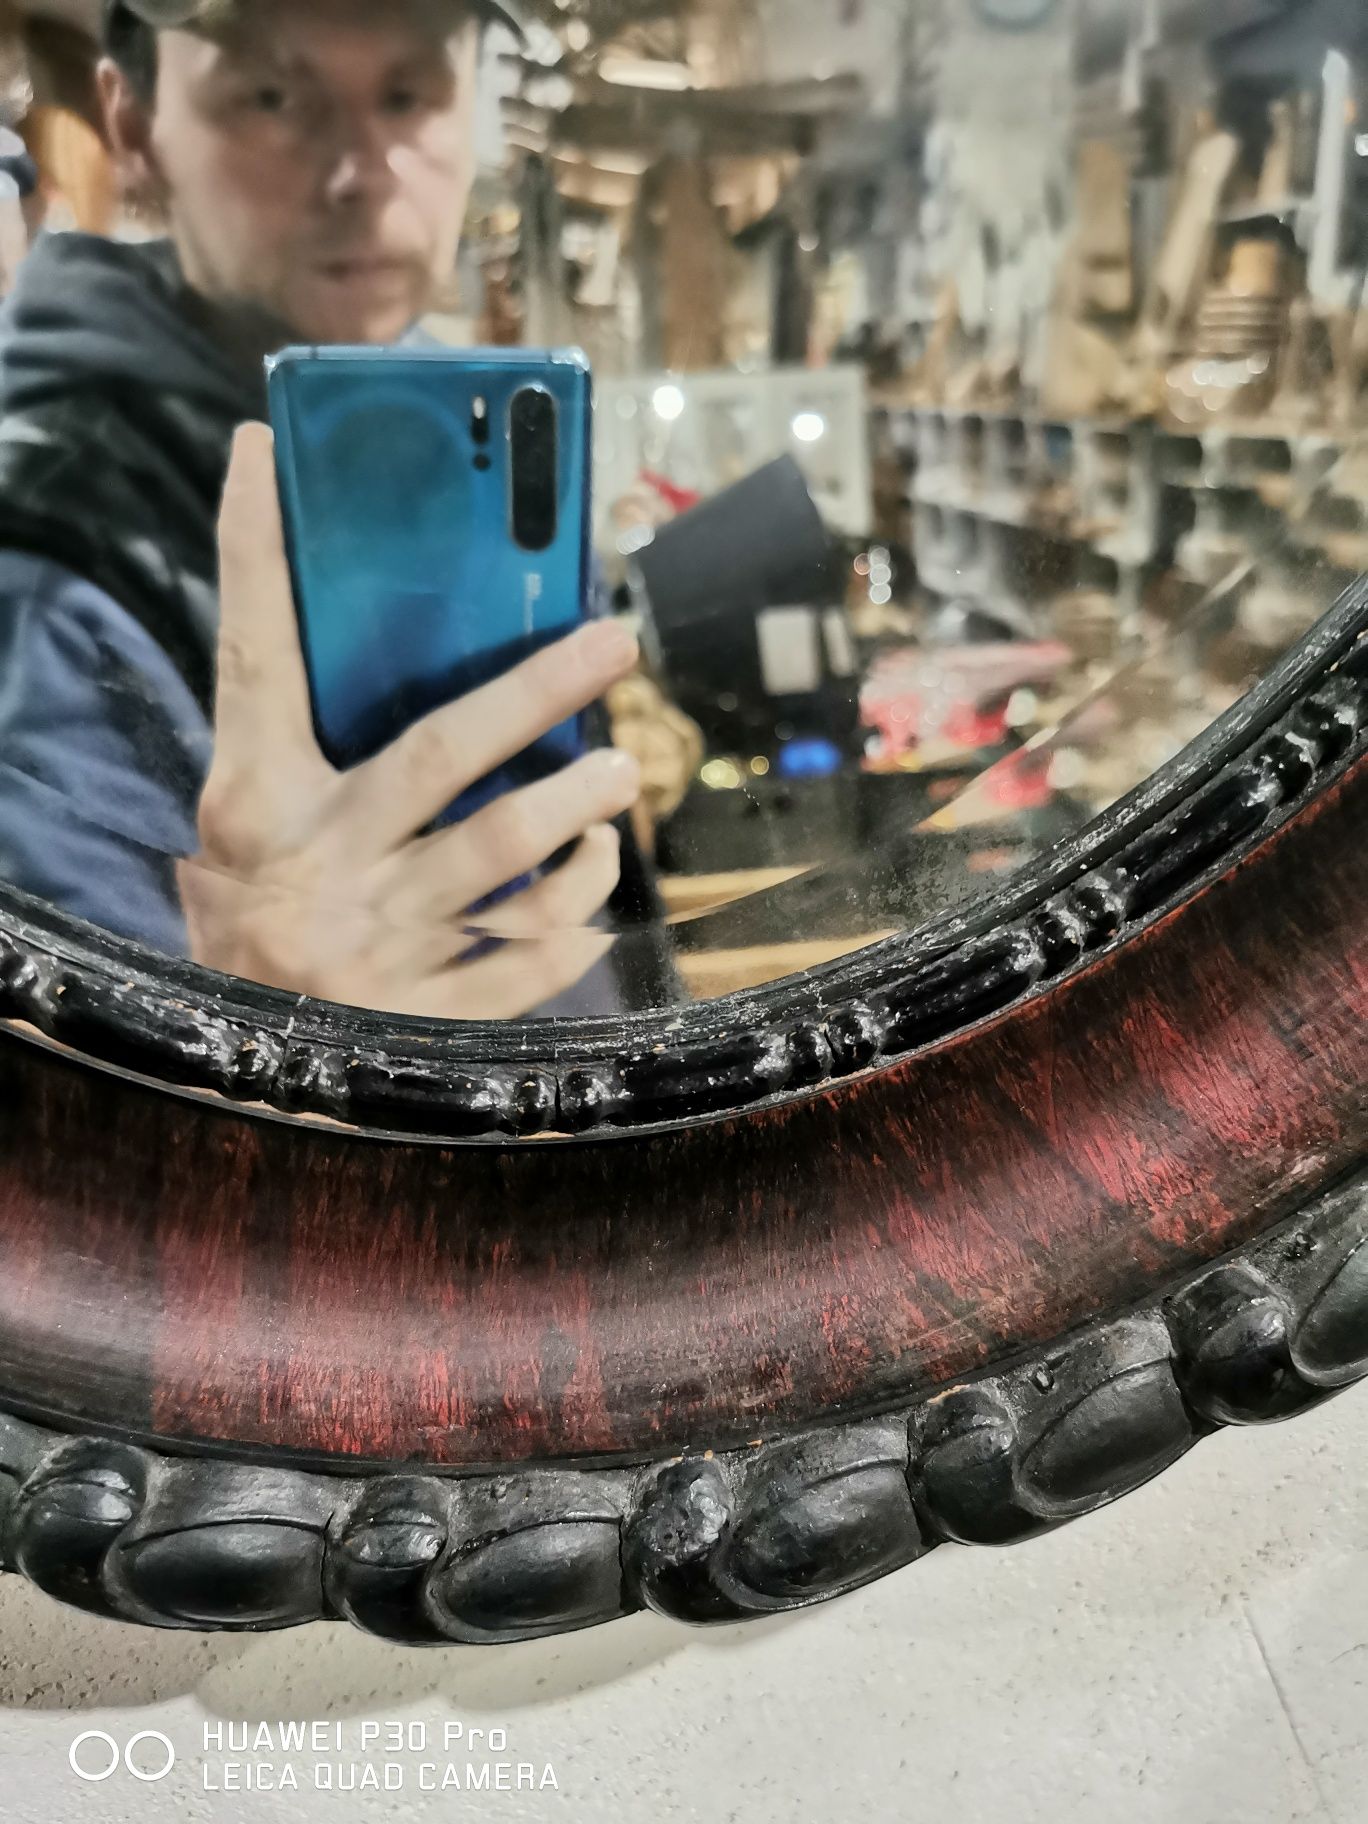 Włoskie lustro w ramie drewnianej